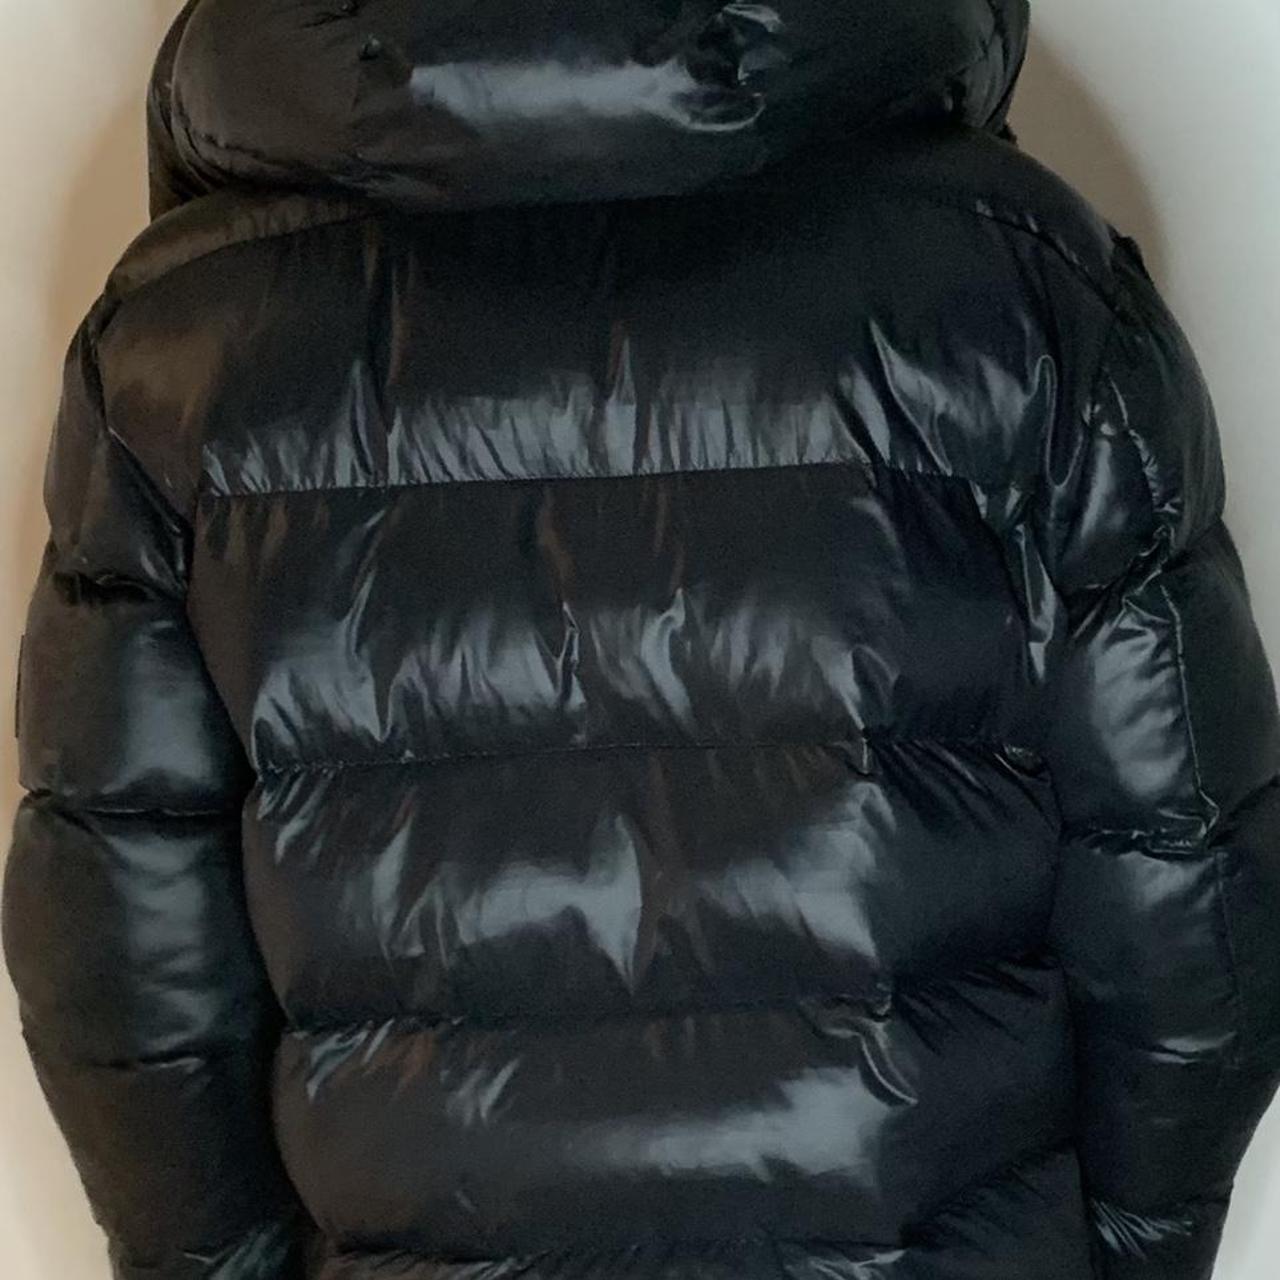 NVLTY shiny puffer jacket Black Size... - Depop